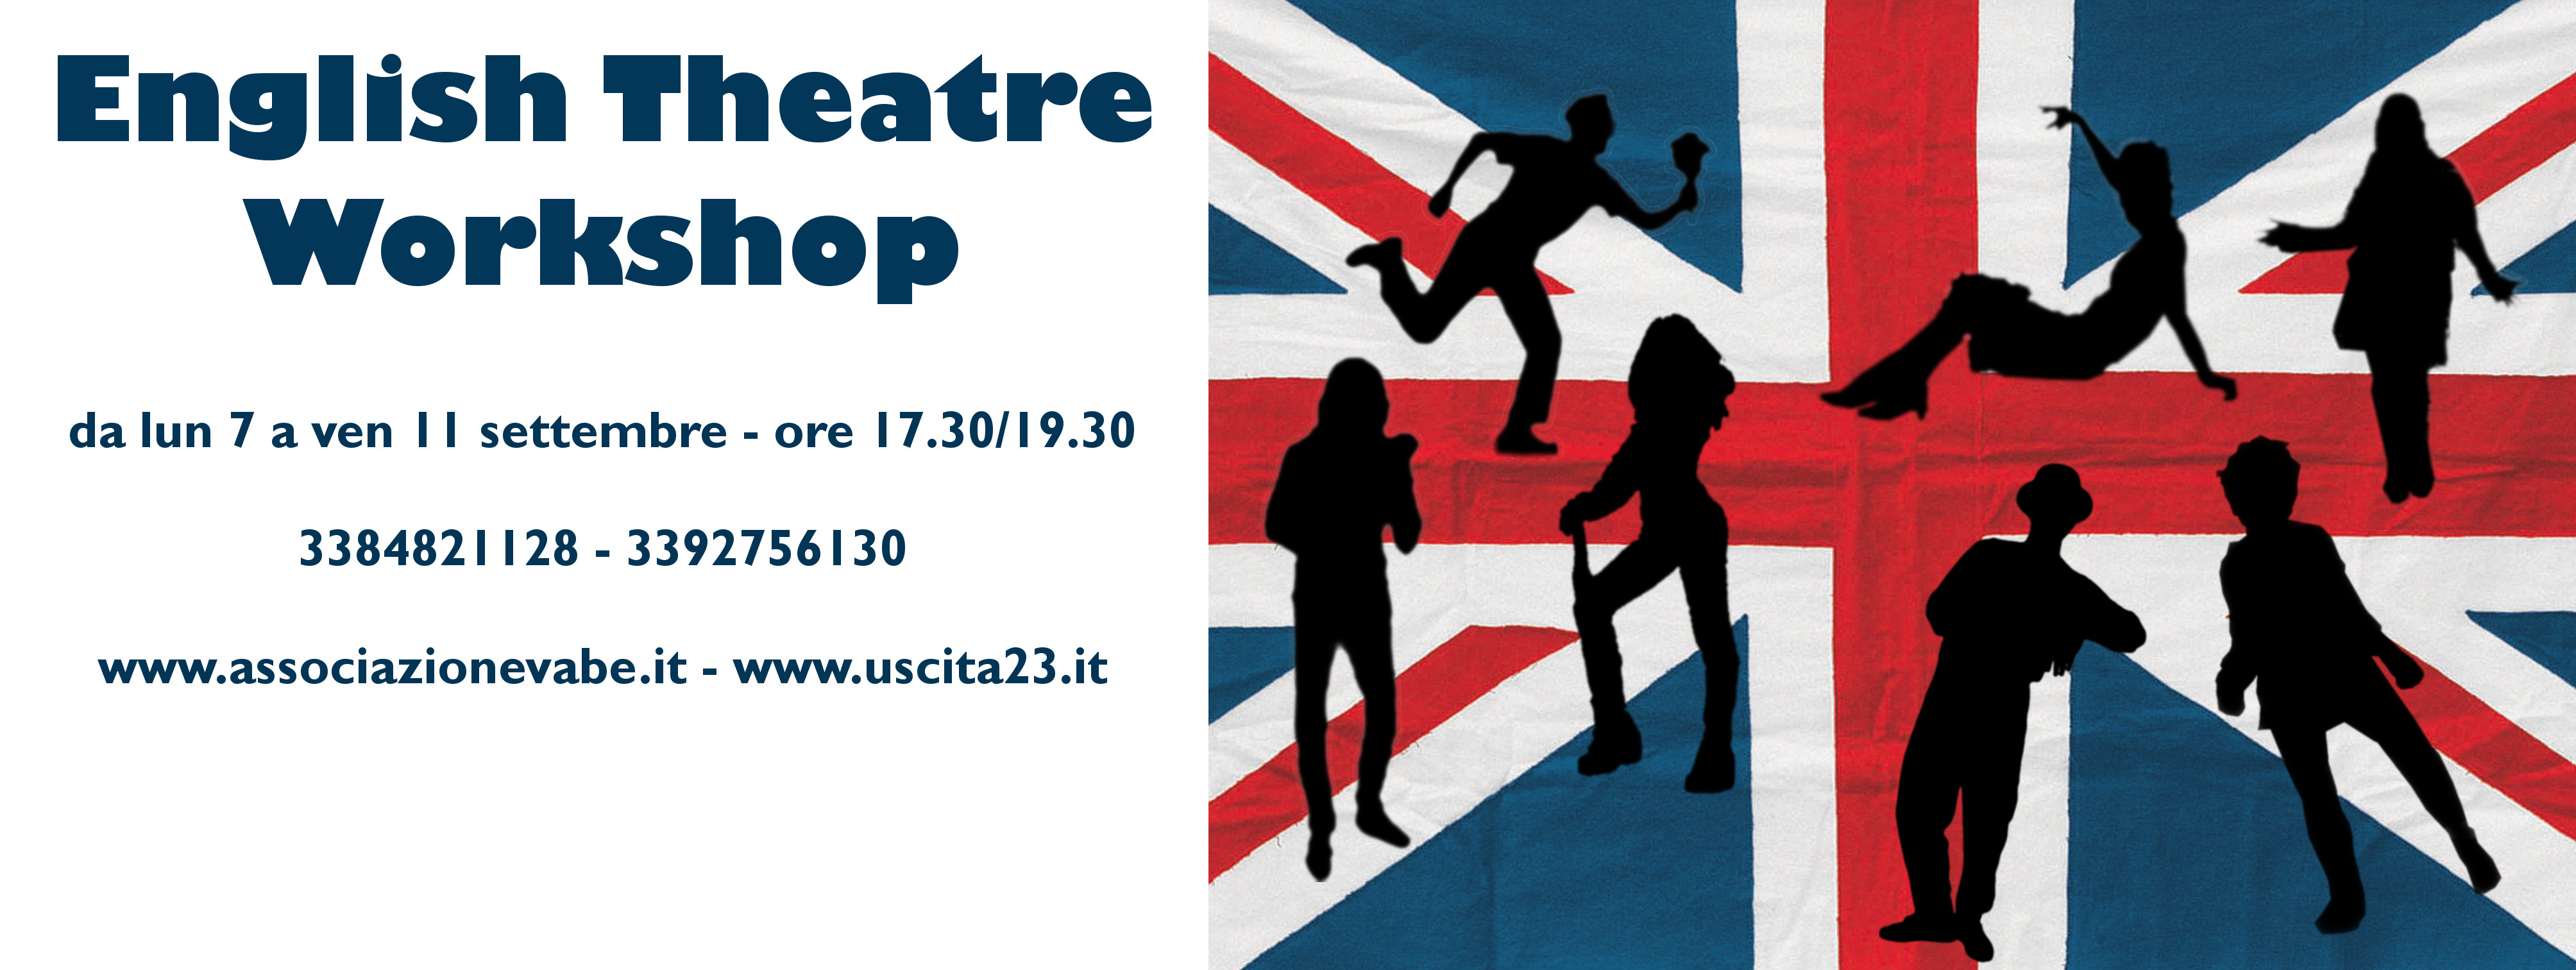 banner di presentazione del corso English theatre workshop_dettagli  corso_bandiera britannica con silhouette nere che richiamano azioni sceniche